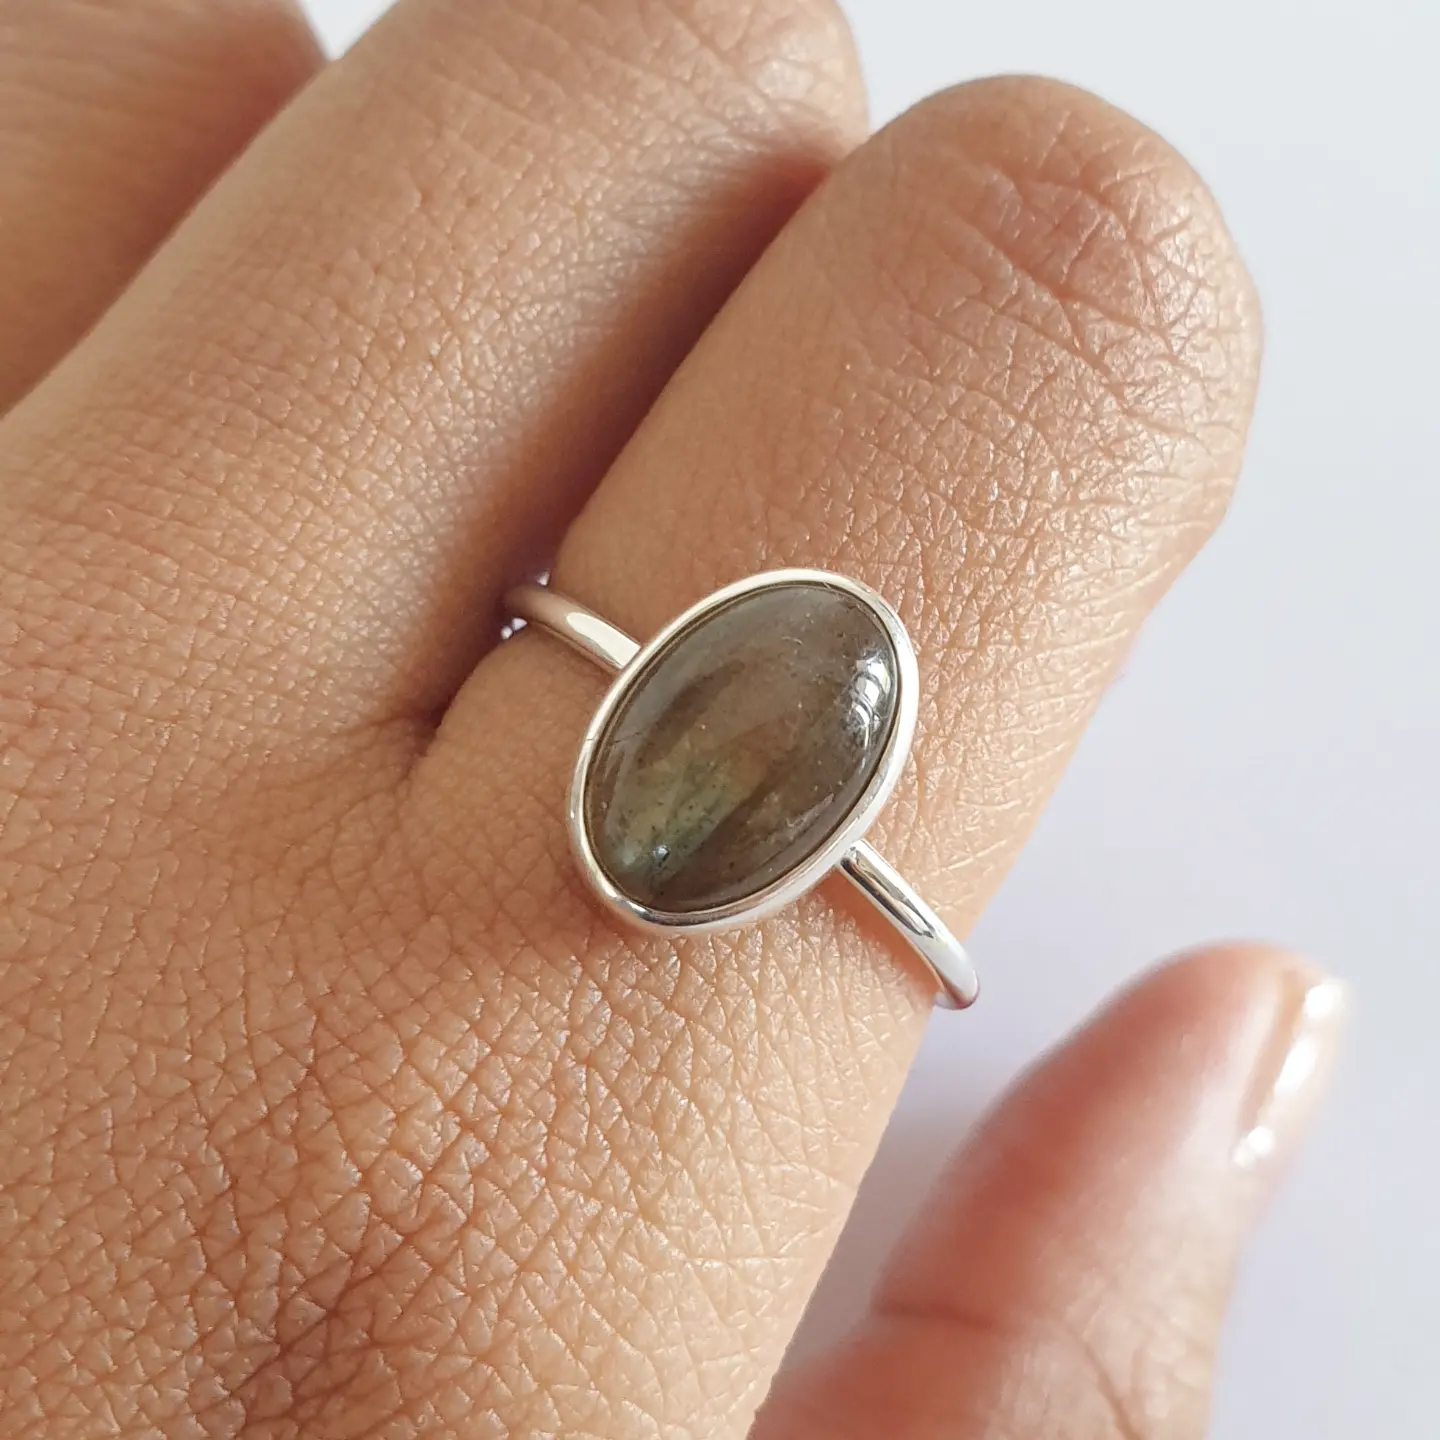 Munduk Ring Bali Silver 925 Labradorite Stone